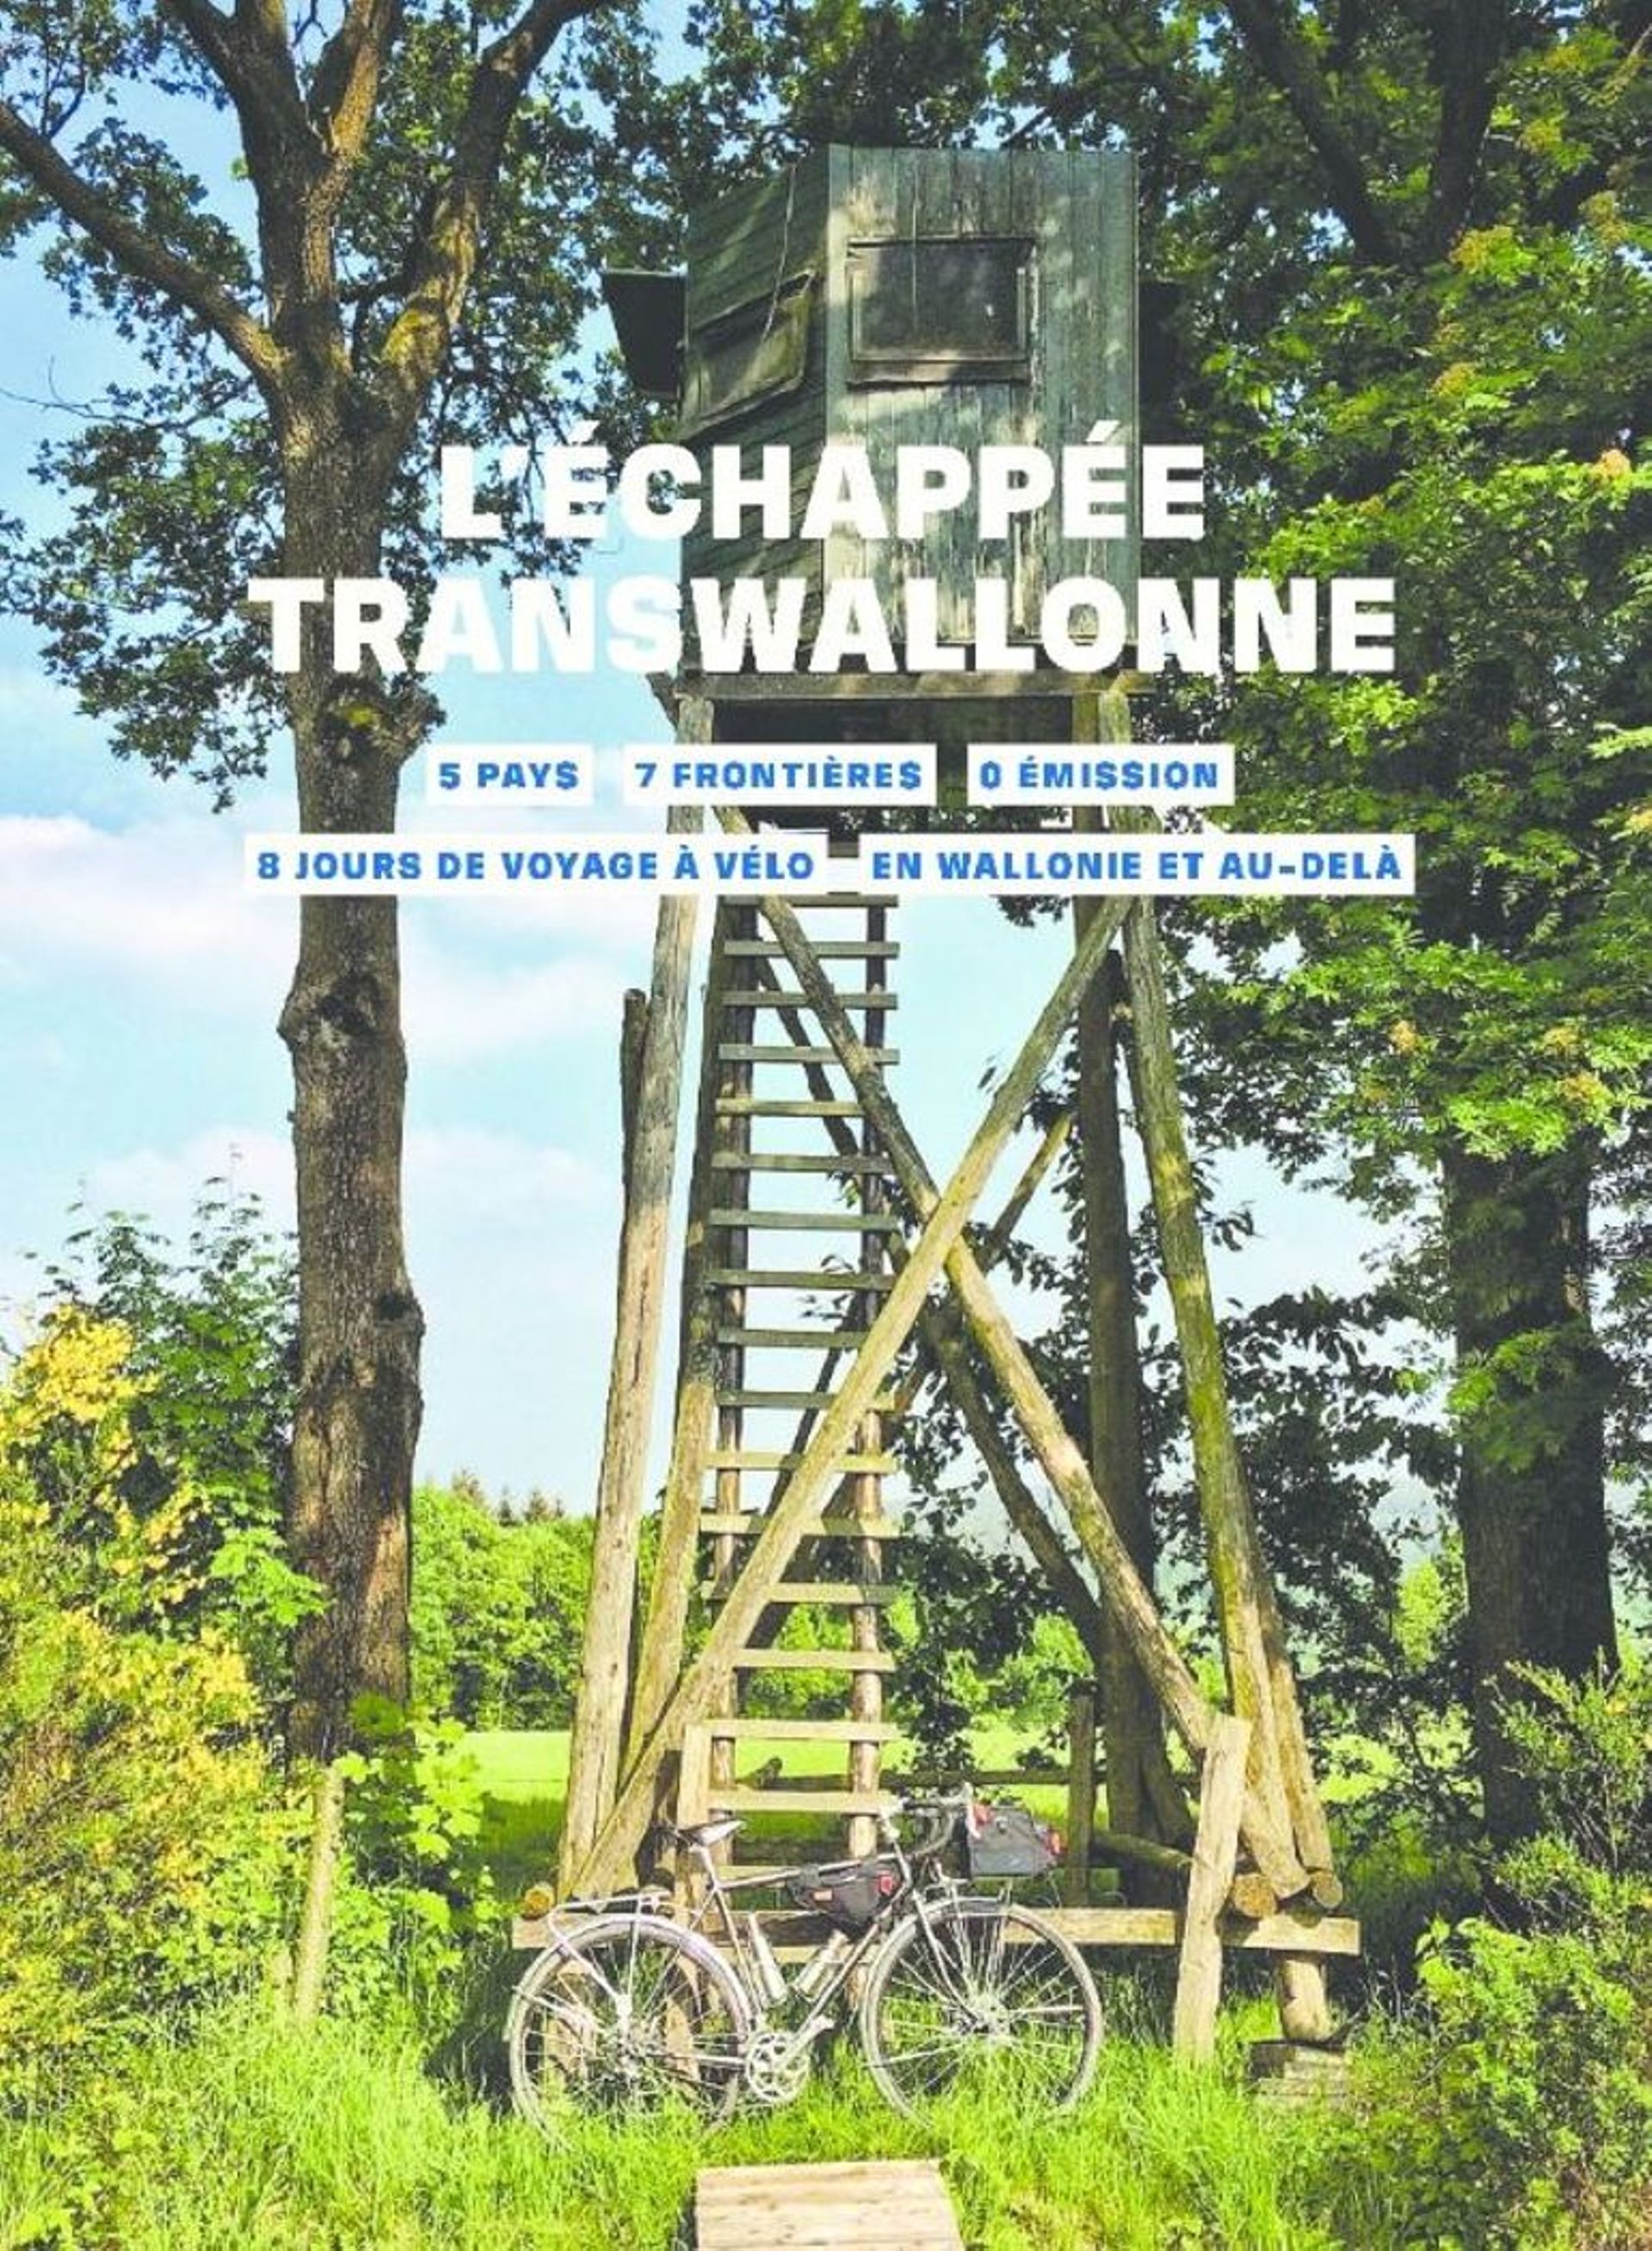 " L’Echappée Transwalonne " propose un tour de Wallonie de 8 jours avec points d’intérêts sur le chemin, hébergements, endroits où se restaurer."